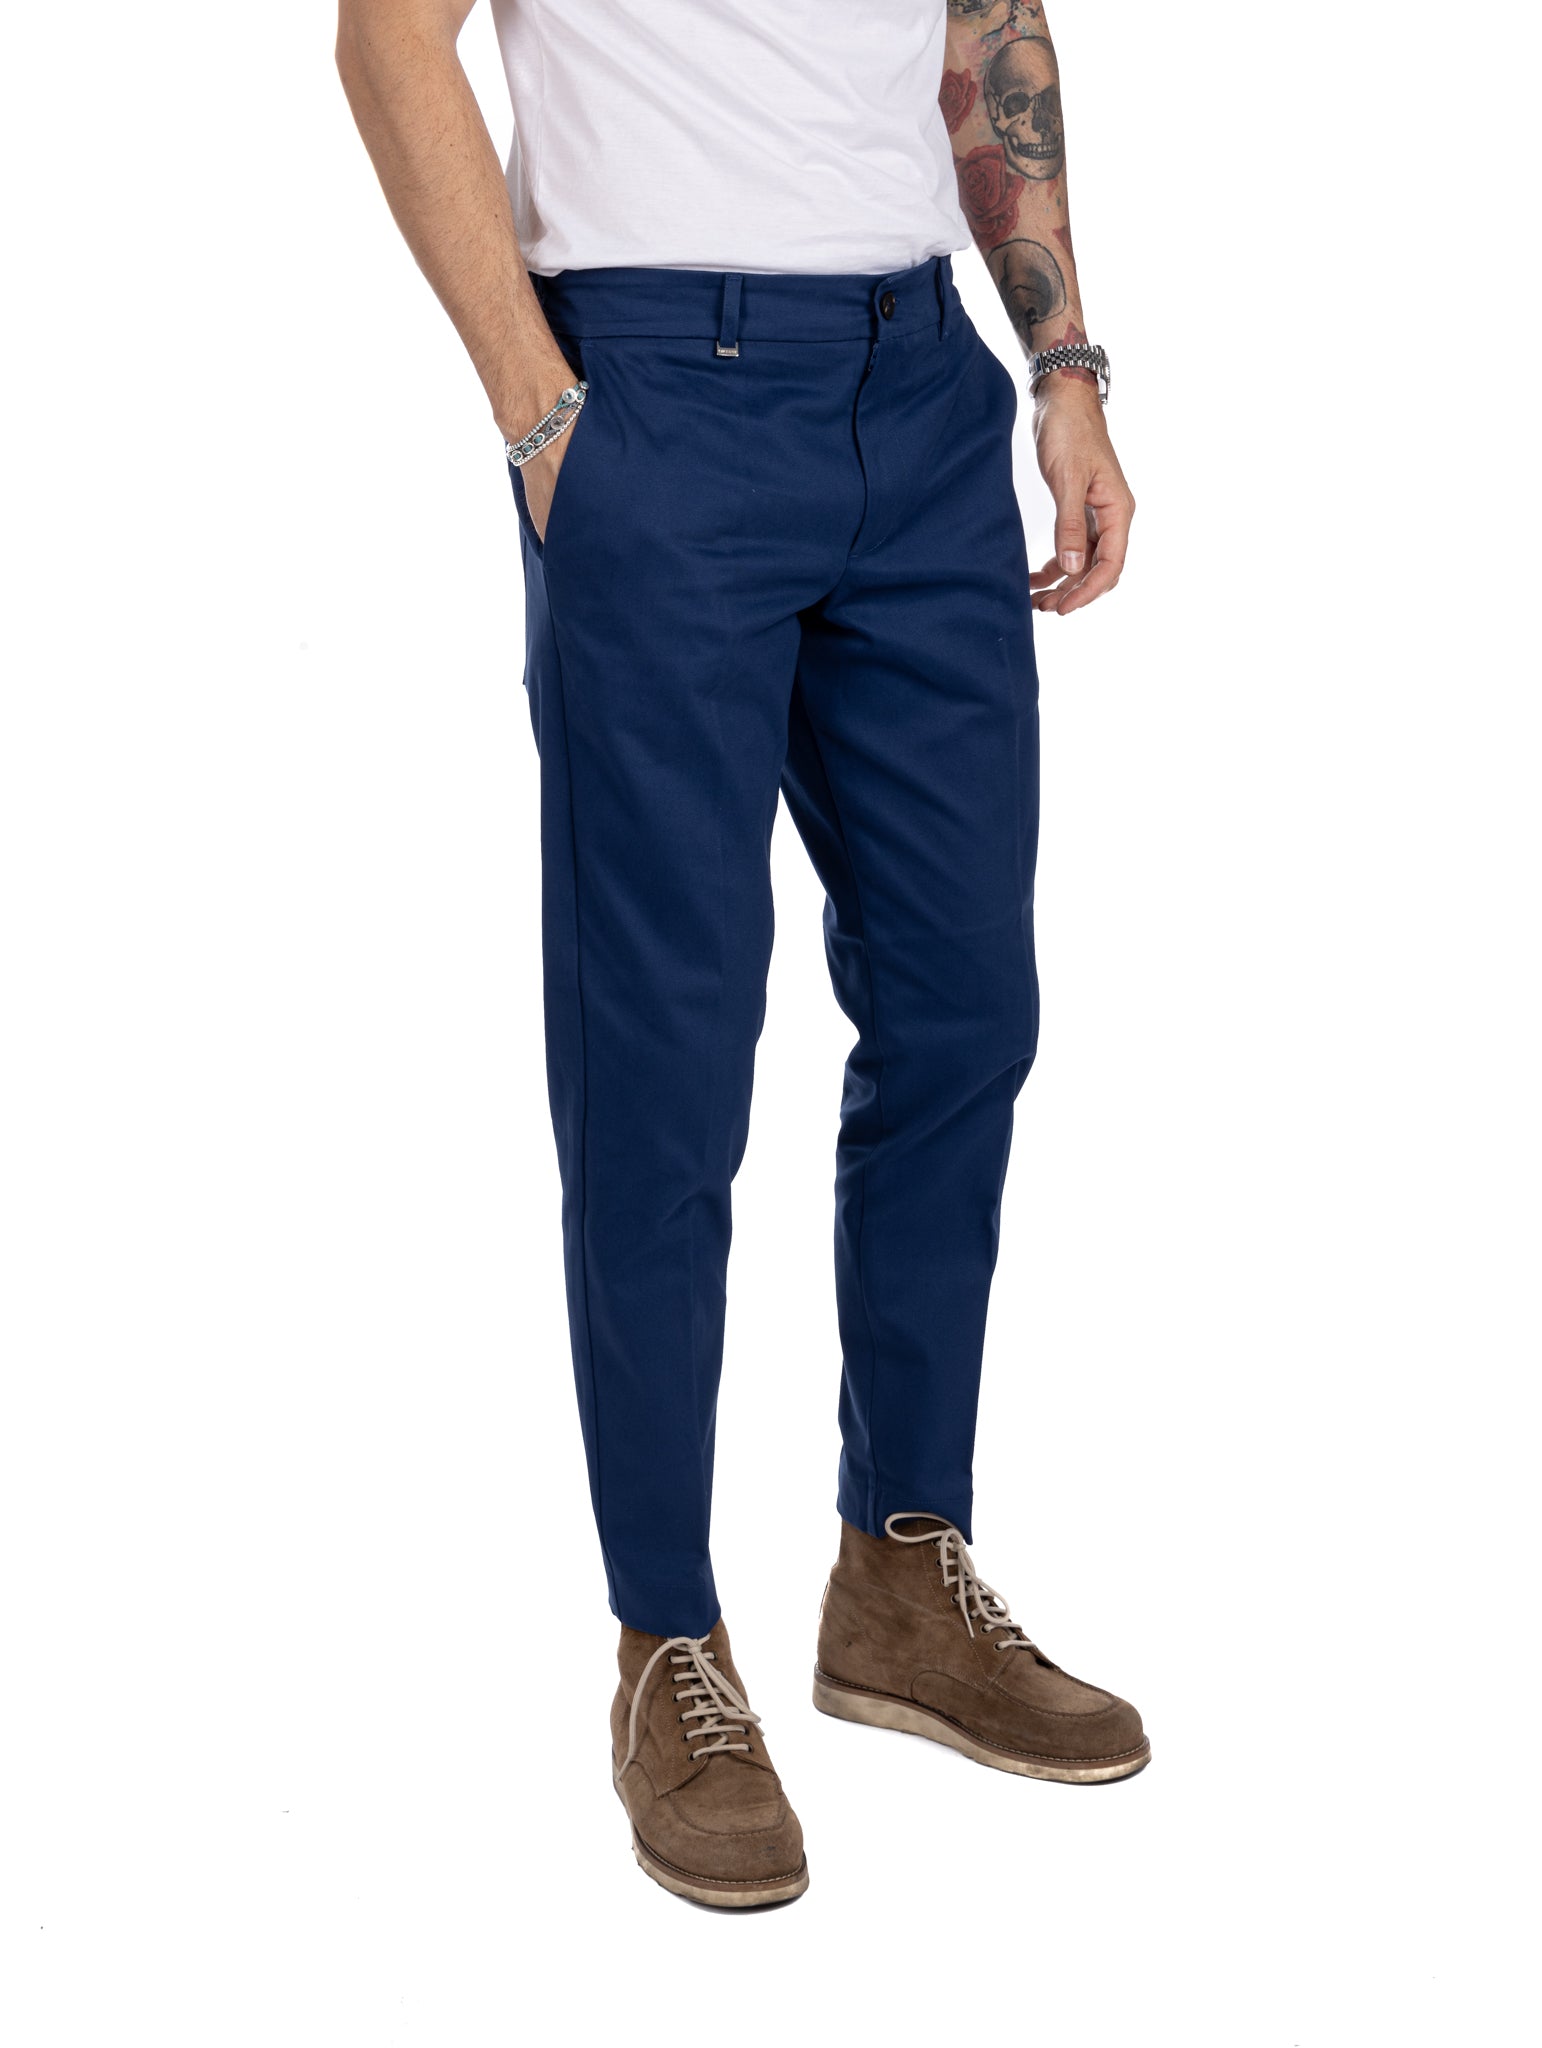 Elder - pantalon capri bleu en coton